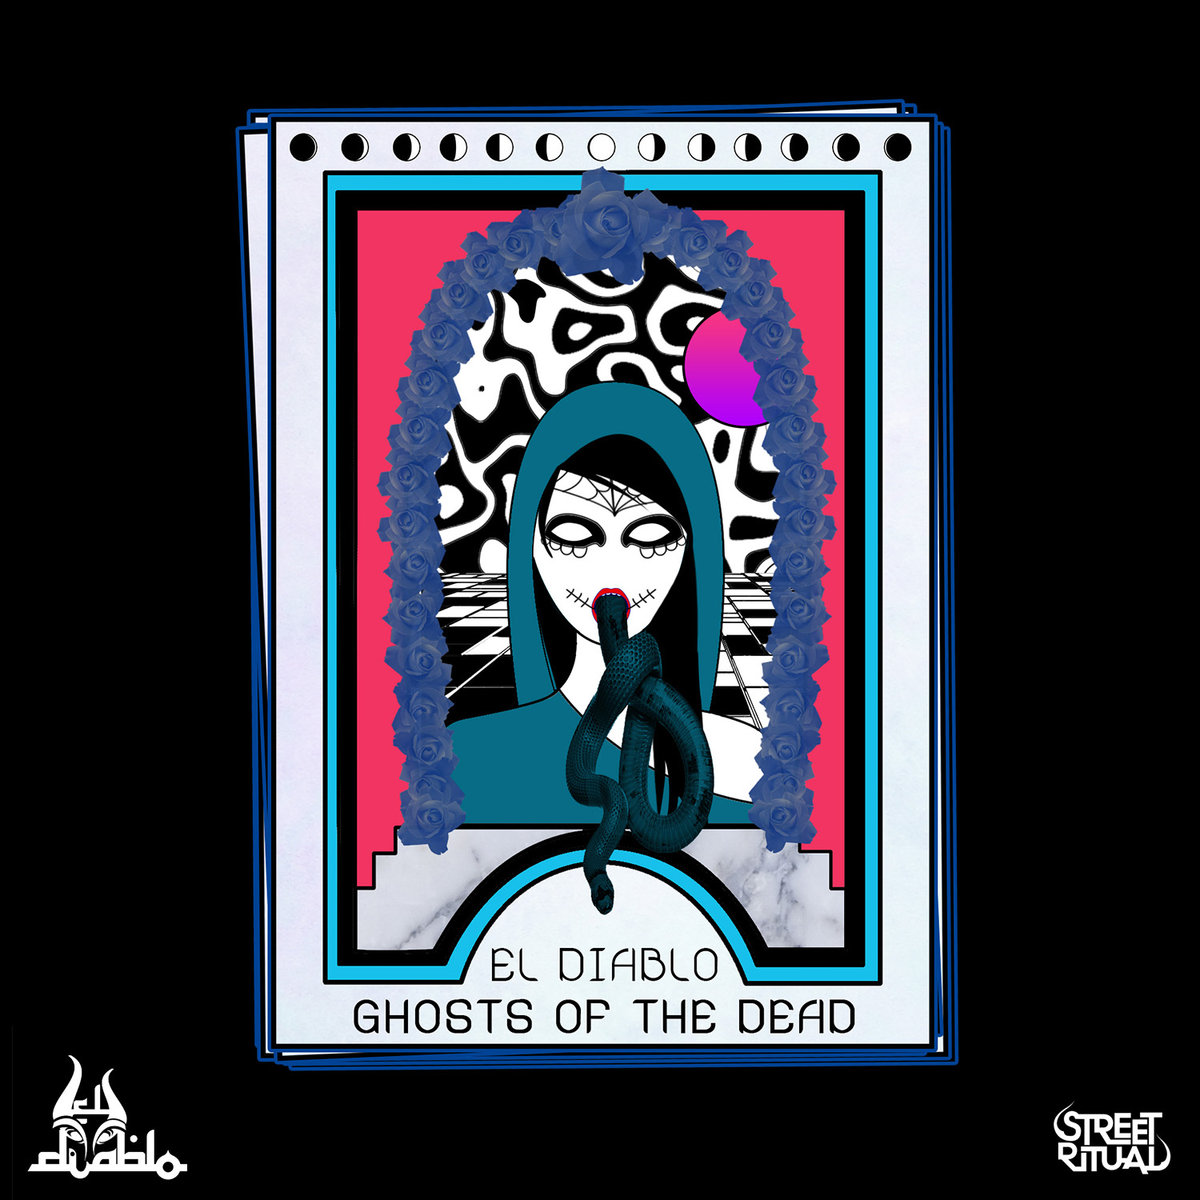 El Diablo - Gun Crazy @ 'Ghosts of the Dead' album (bass, dark)